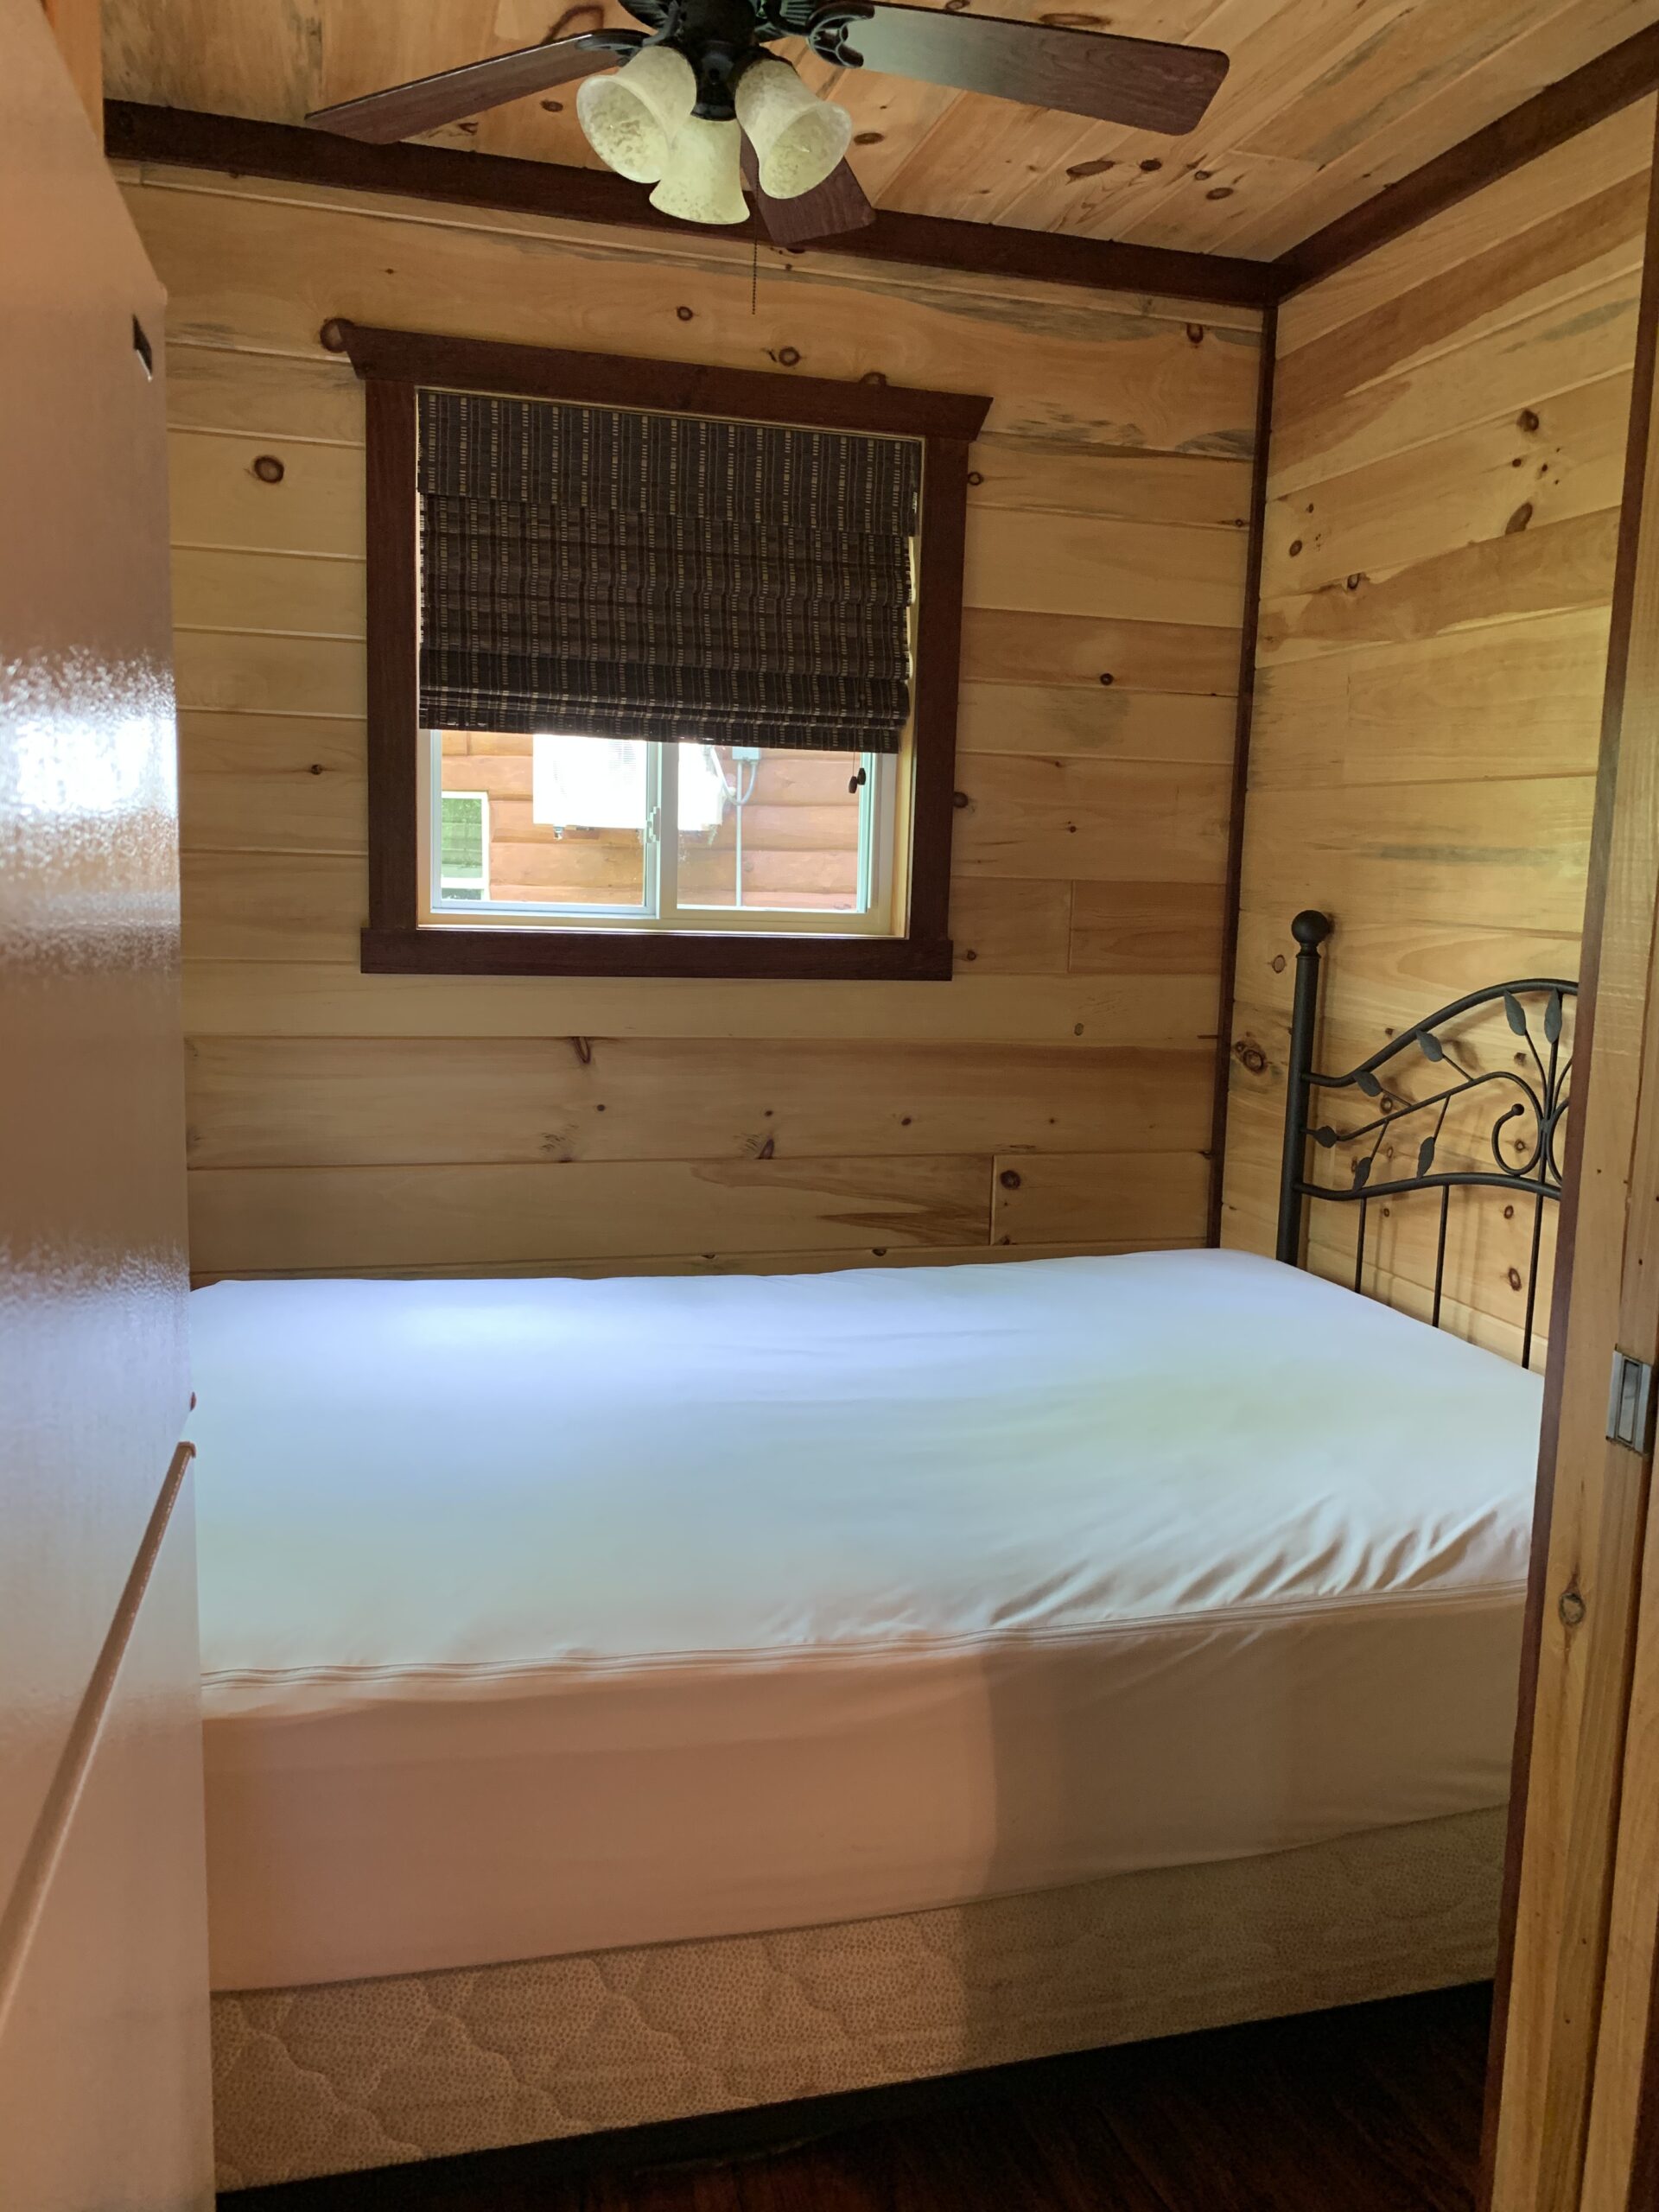 Bedroom - Double Bed